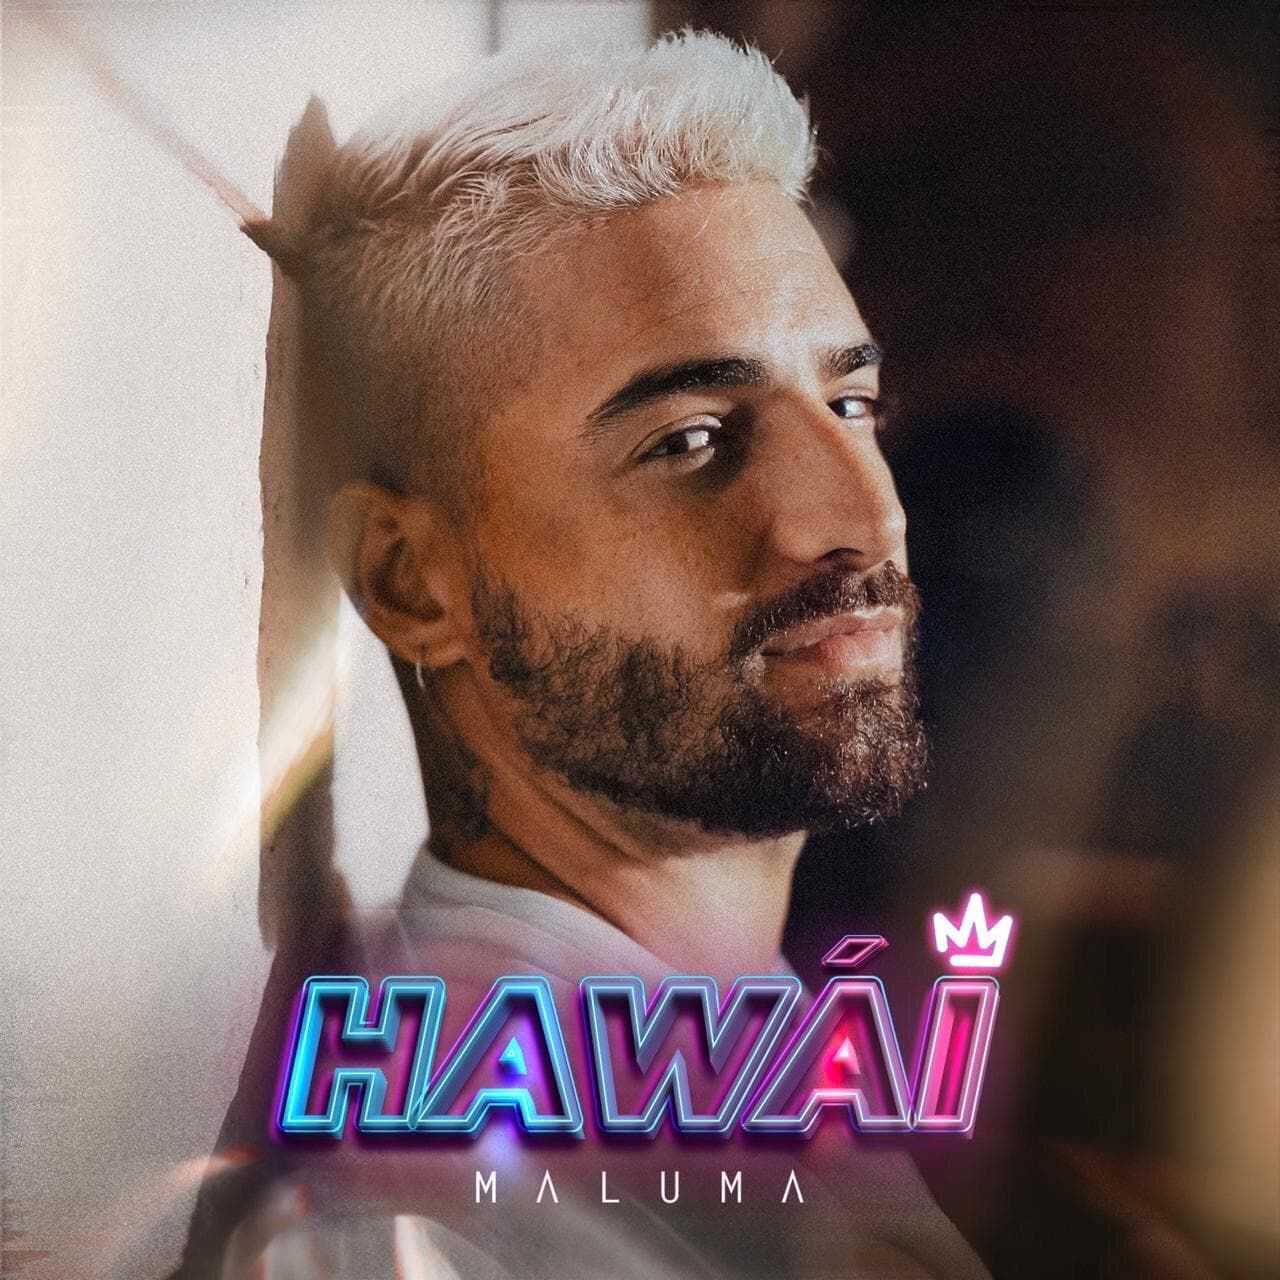 Maluma estrena hoy su nuevo sencillo y video "HAWÁI"